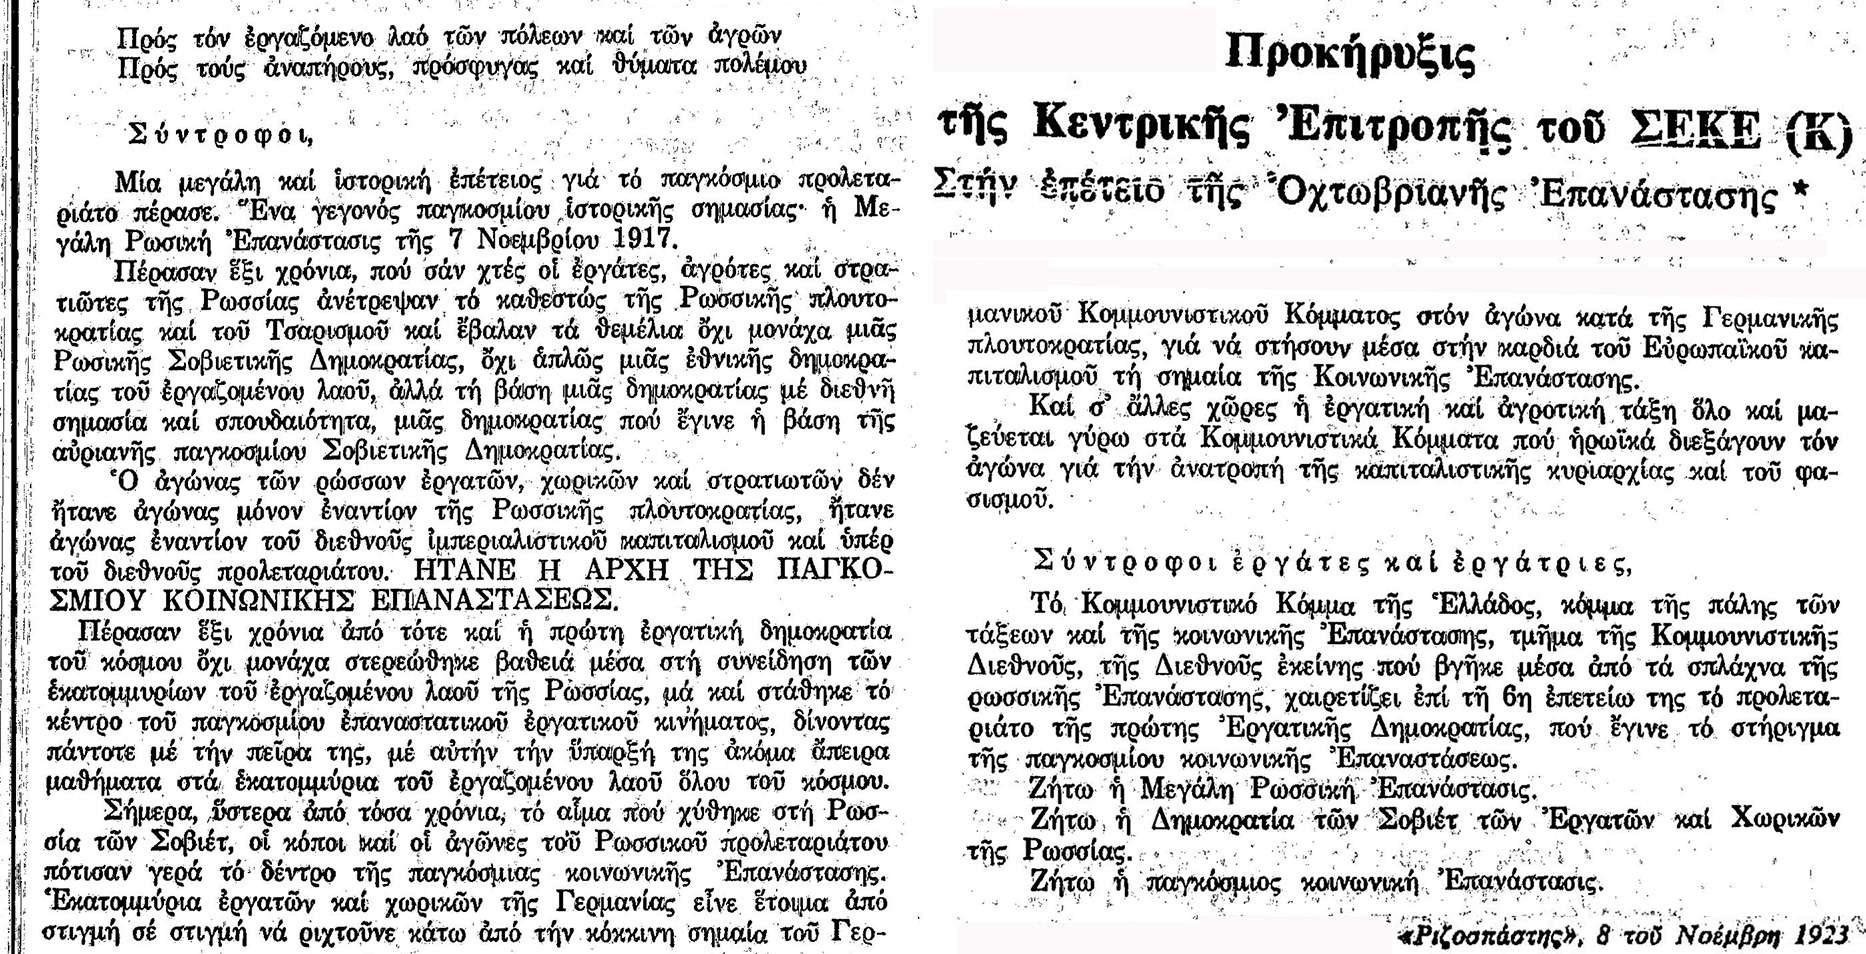 ΚΚΕ ΣΕΚΕ Προκήρυξις «Στην επέτειο της Οχτωβριανής Επανάστασης» Νοέμβρης 1923